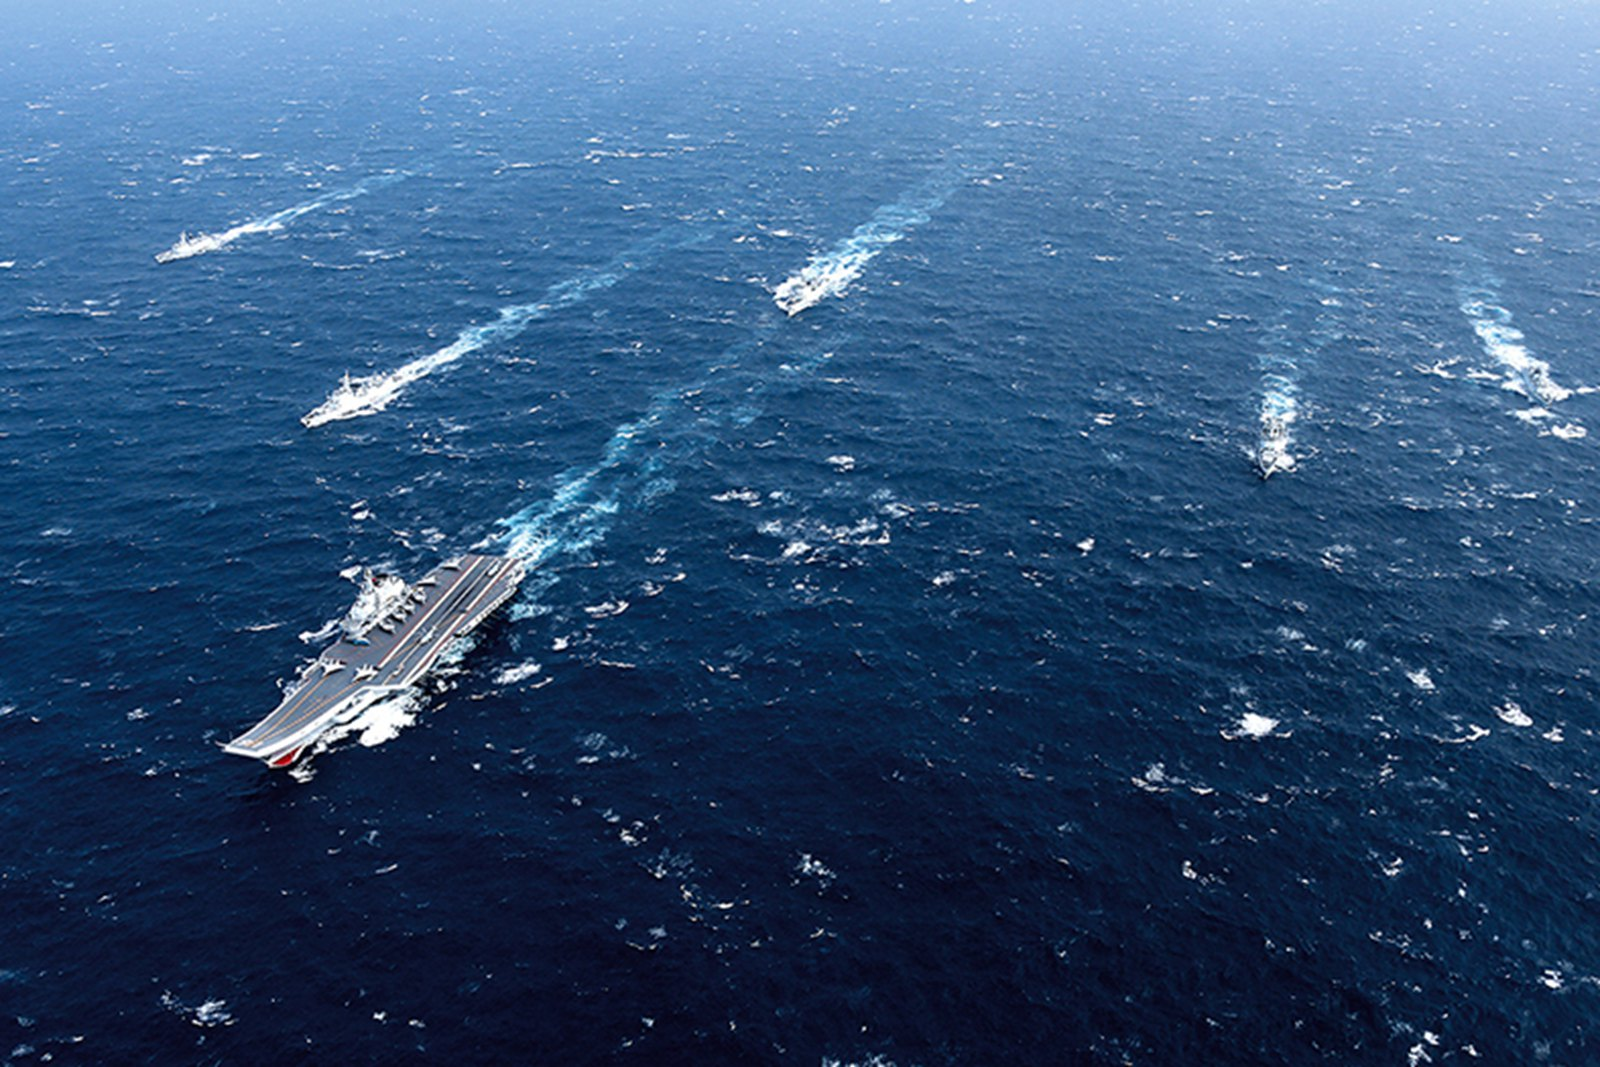 美专家:中国如派出航母挑衅得过日本这关,反舰导弹克制中国航母